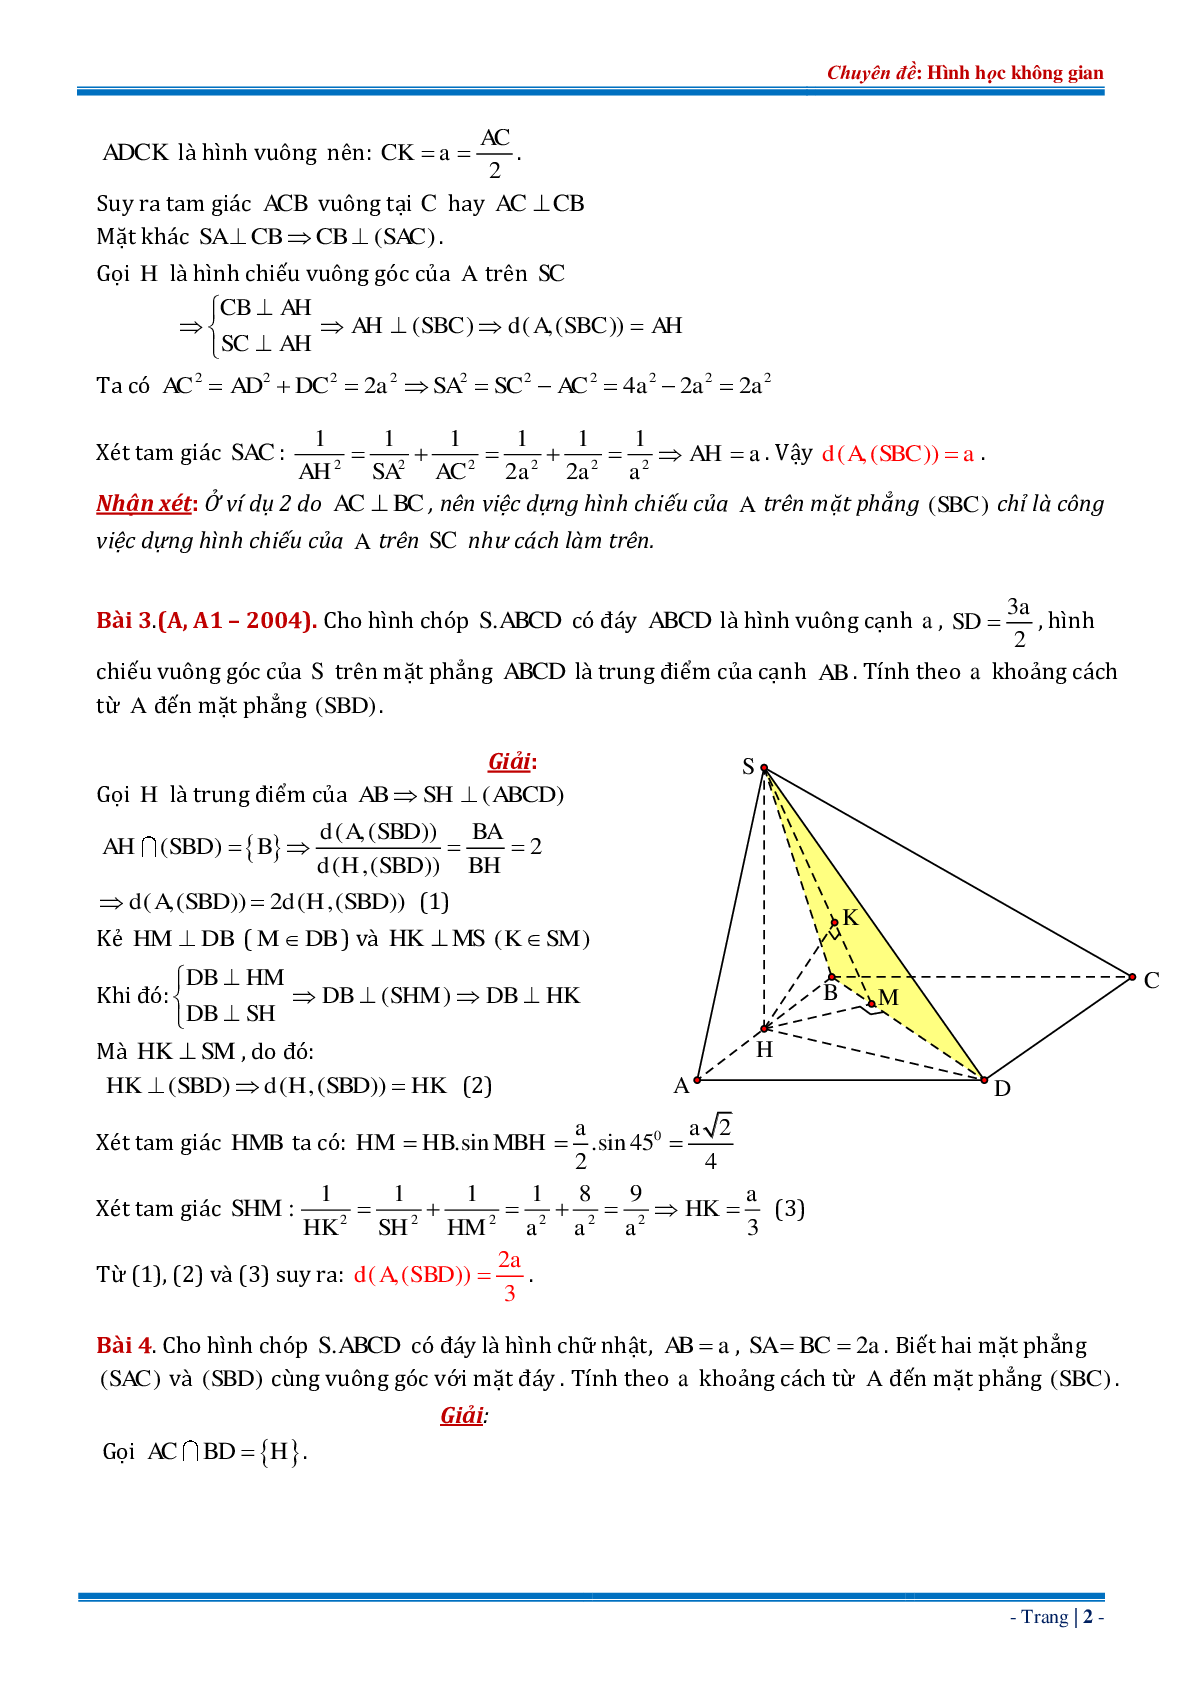 18 bài tập về khoảng cách từ điểm đến mặt phẳng dạng tổng hợp có đáp án chi tiết (trang 2)